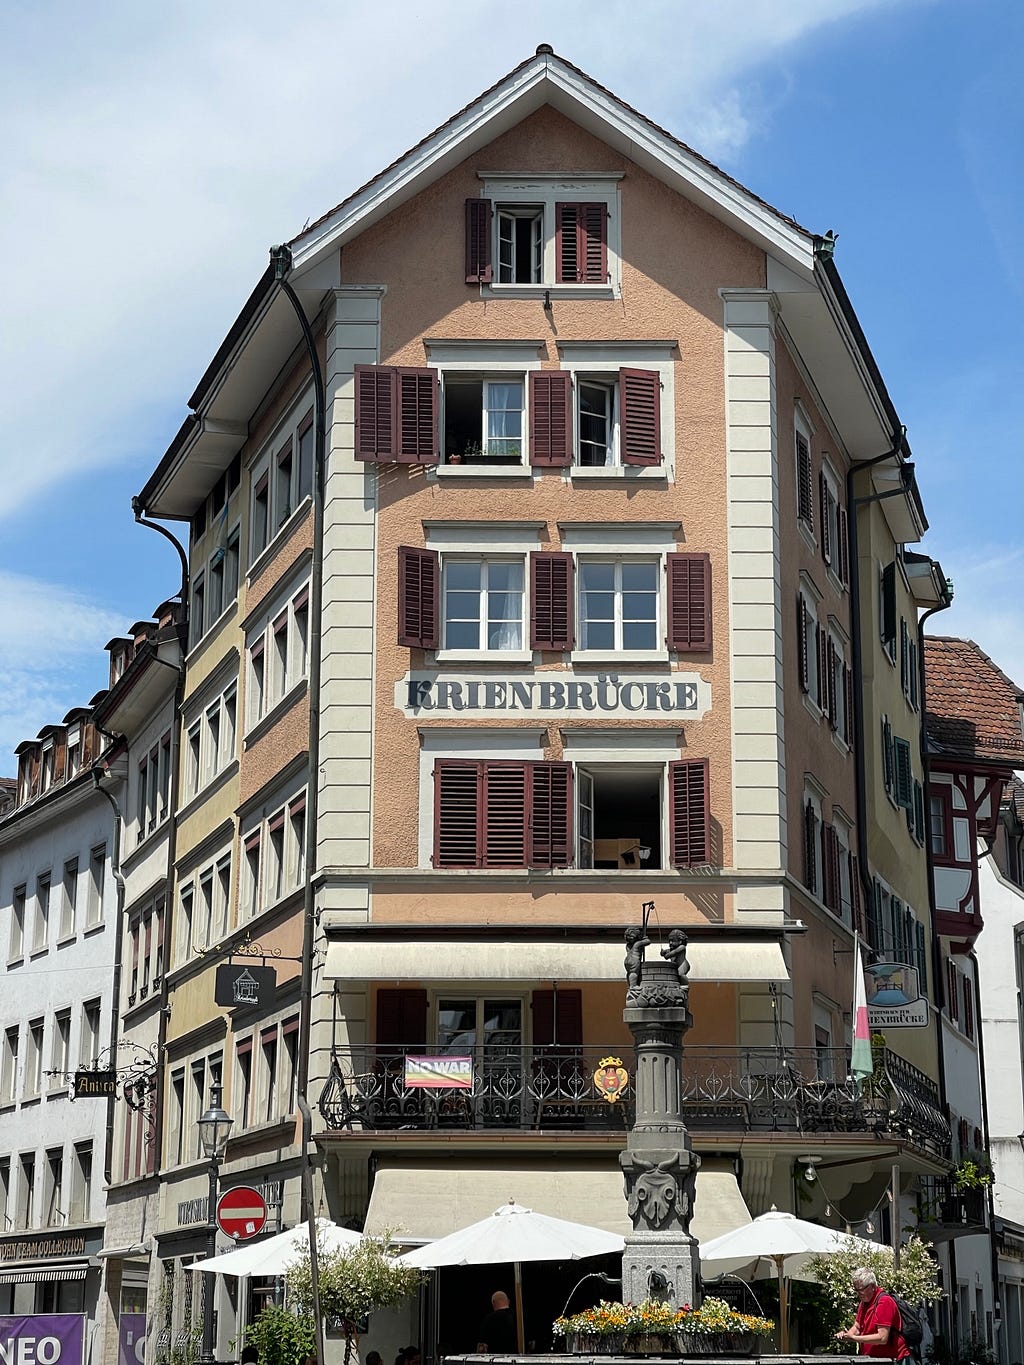 Old town Lucerne